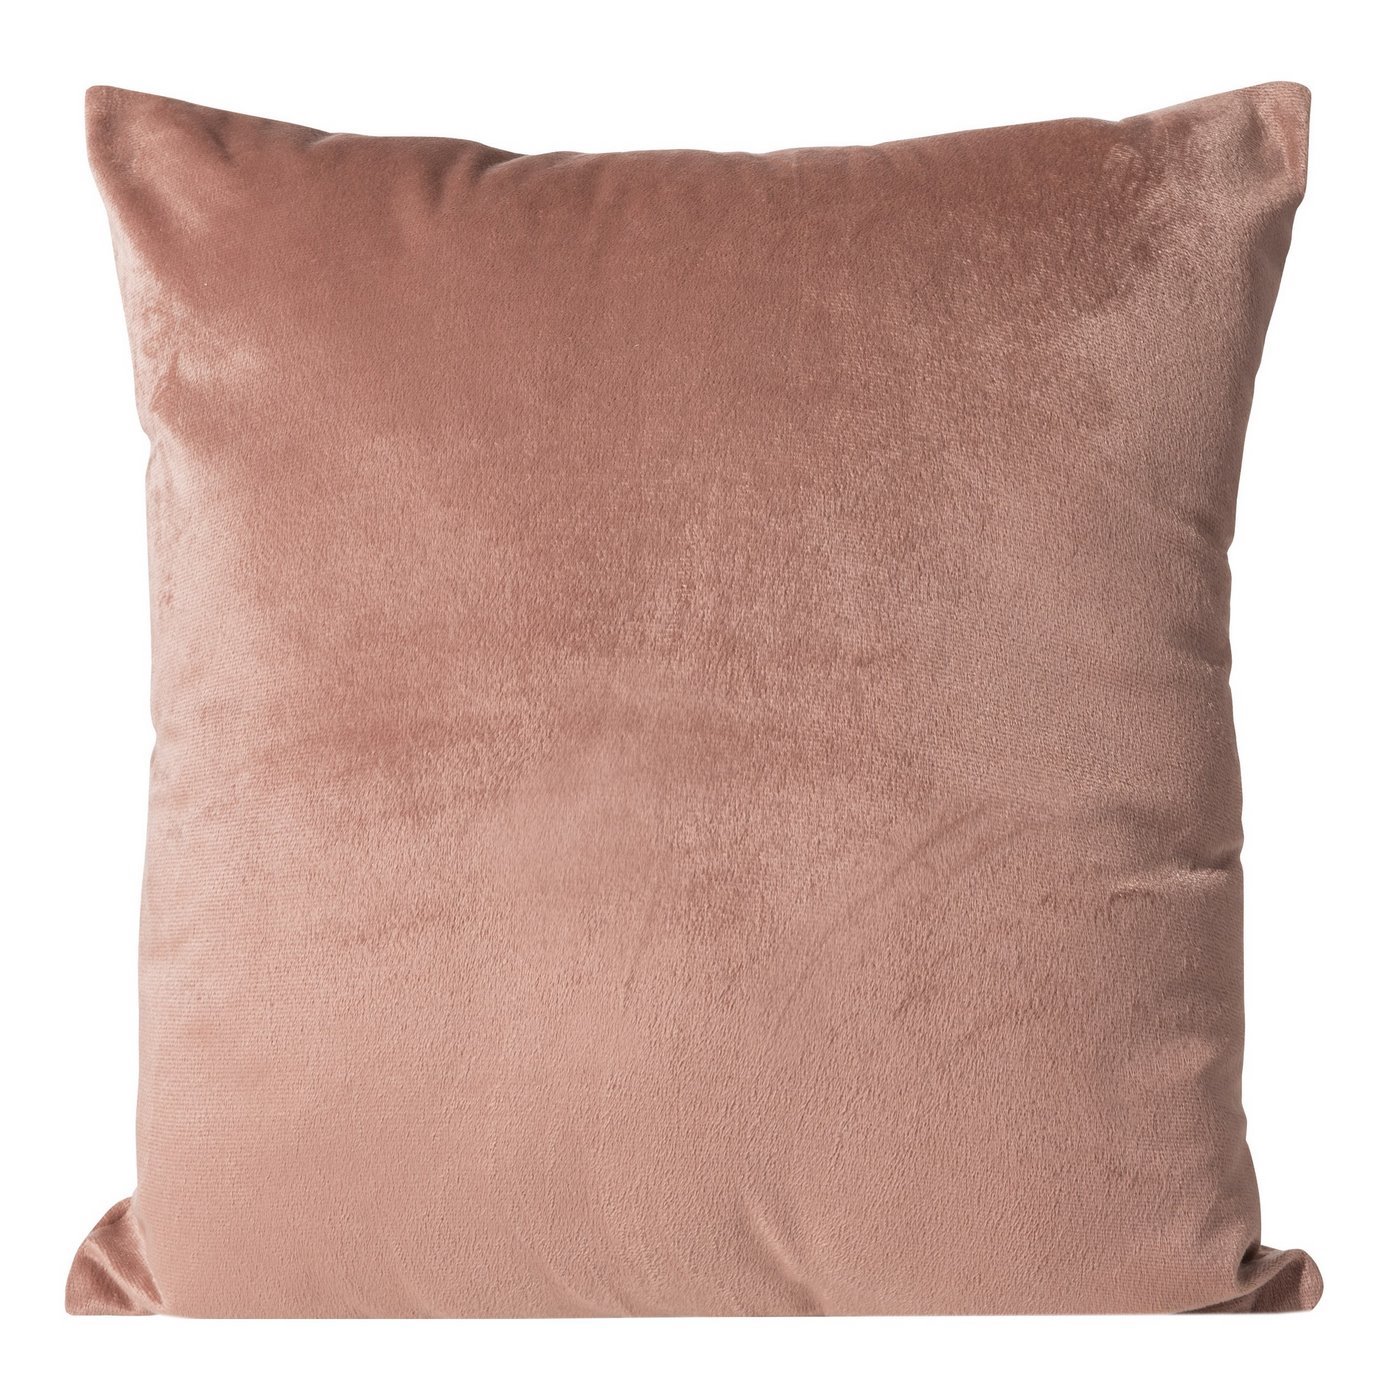 Poszewka dekoracyjna na poduszkę 45 x 45 kolor ciemny różowy